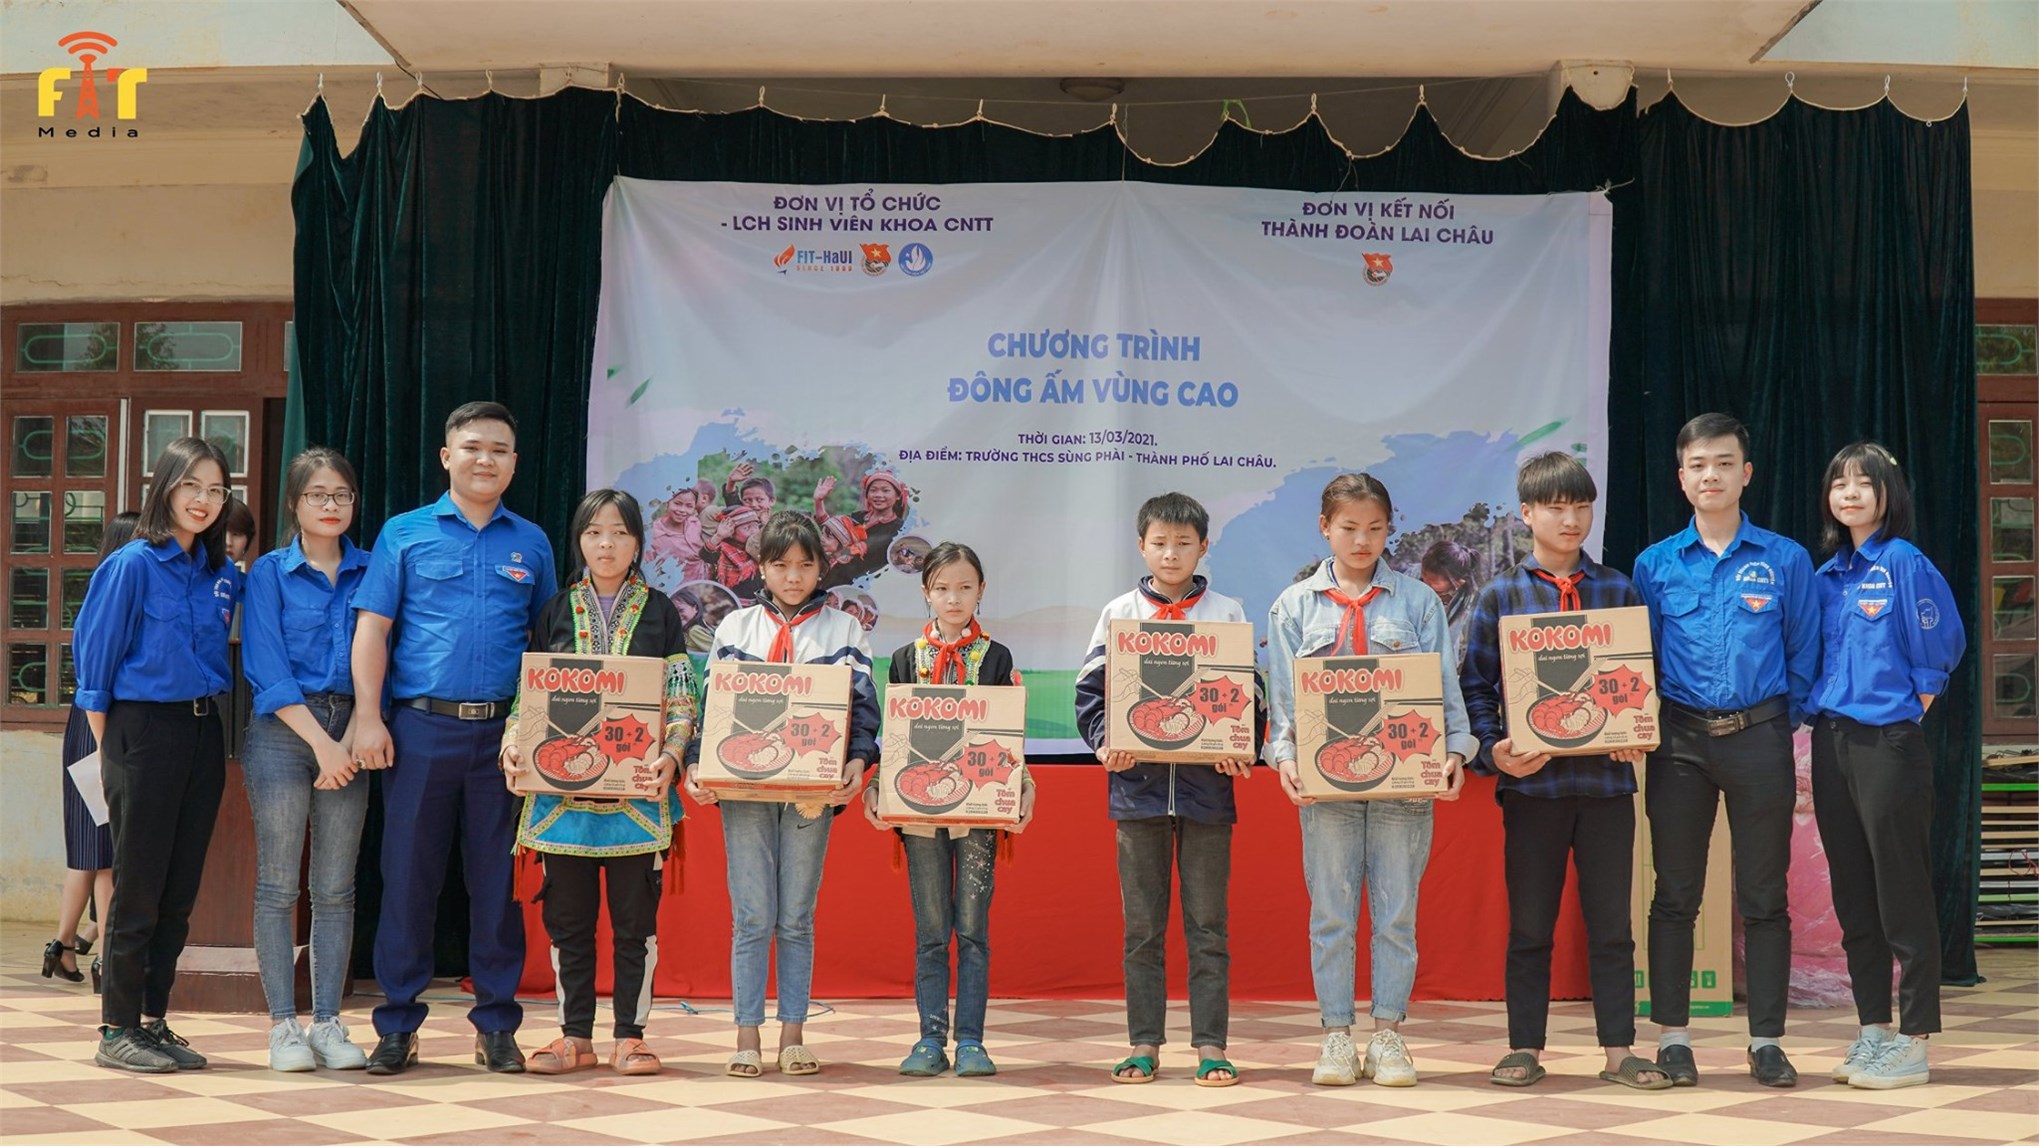 Chương trình “Đông ấm vùng cao” đến với học sinh huyện miền núi Lai Châu